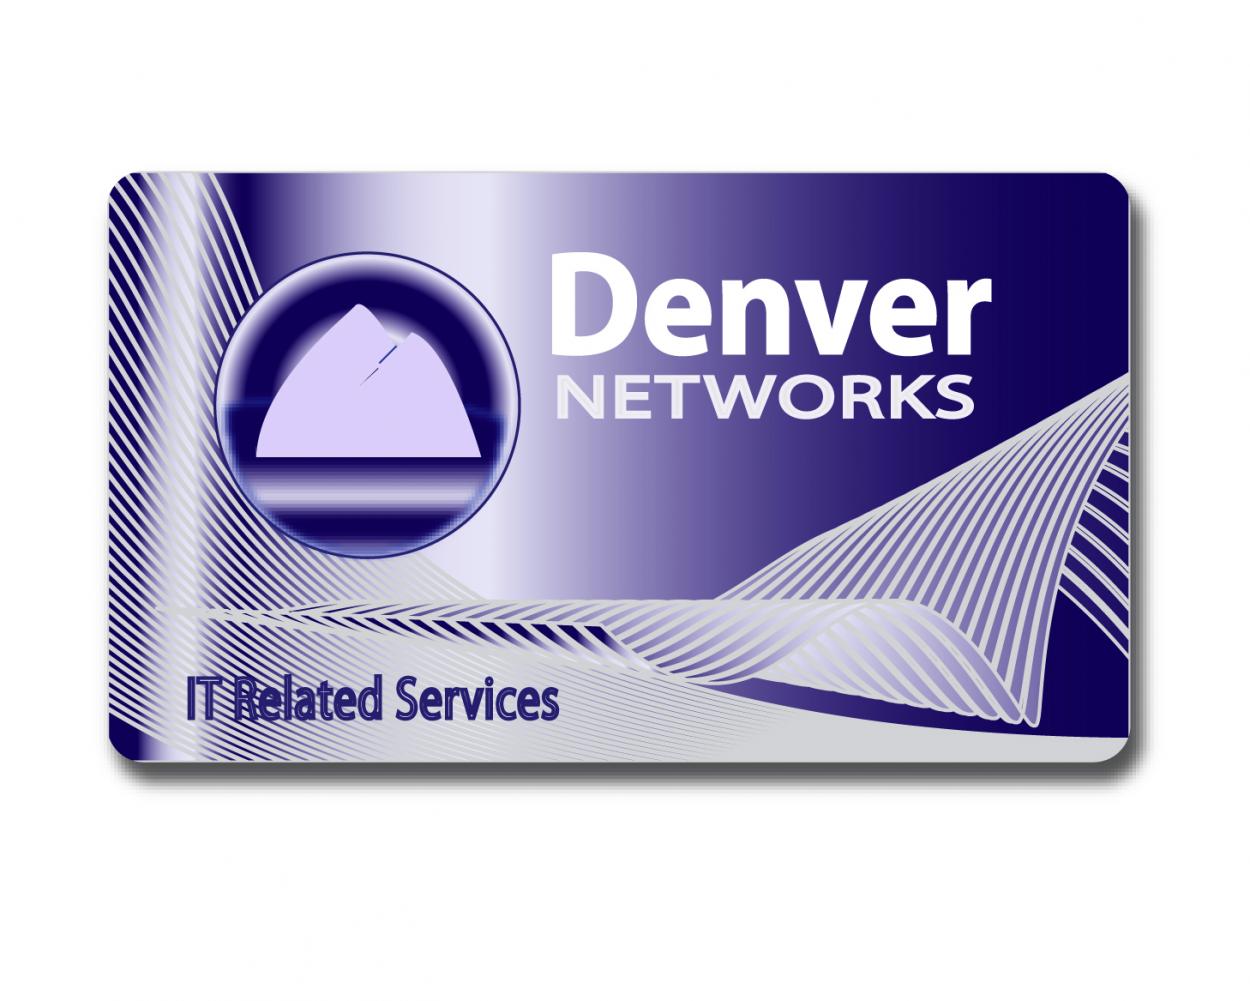 Business Card & Stationery Design entry 91448 submitted by harbor to the Business Card & Stationery Design for Denver Networks run by denvernetworks